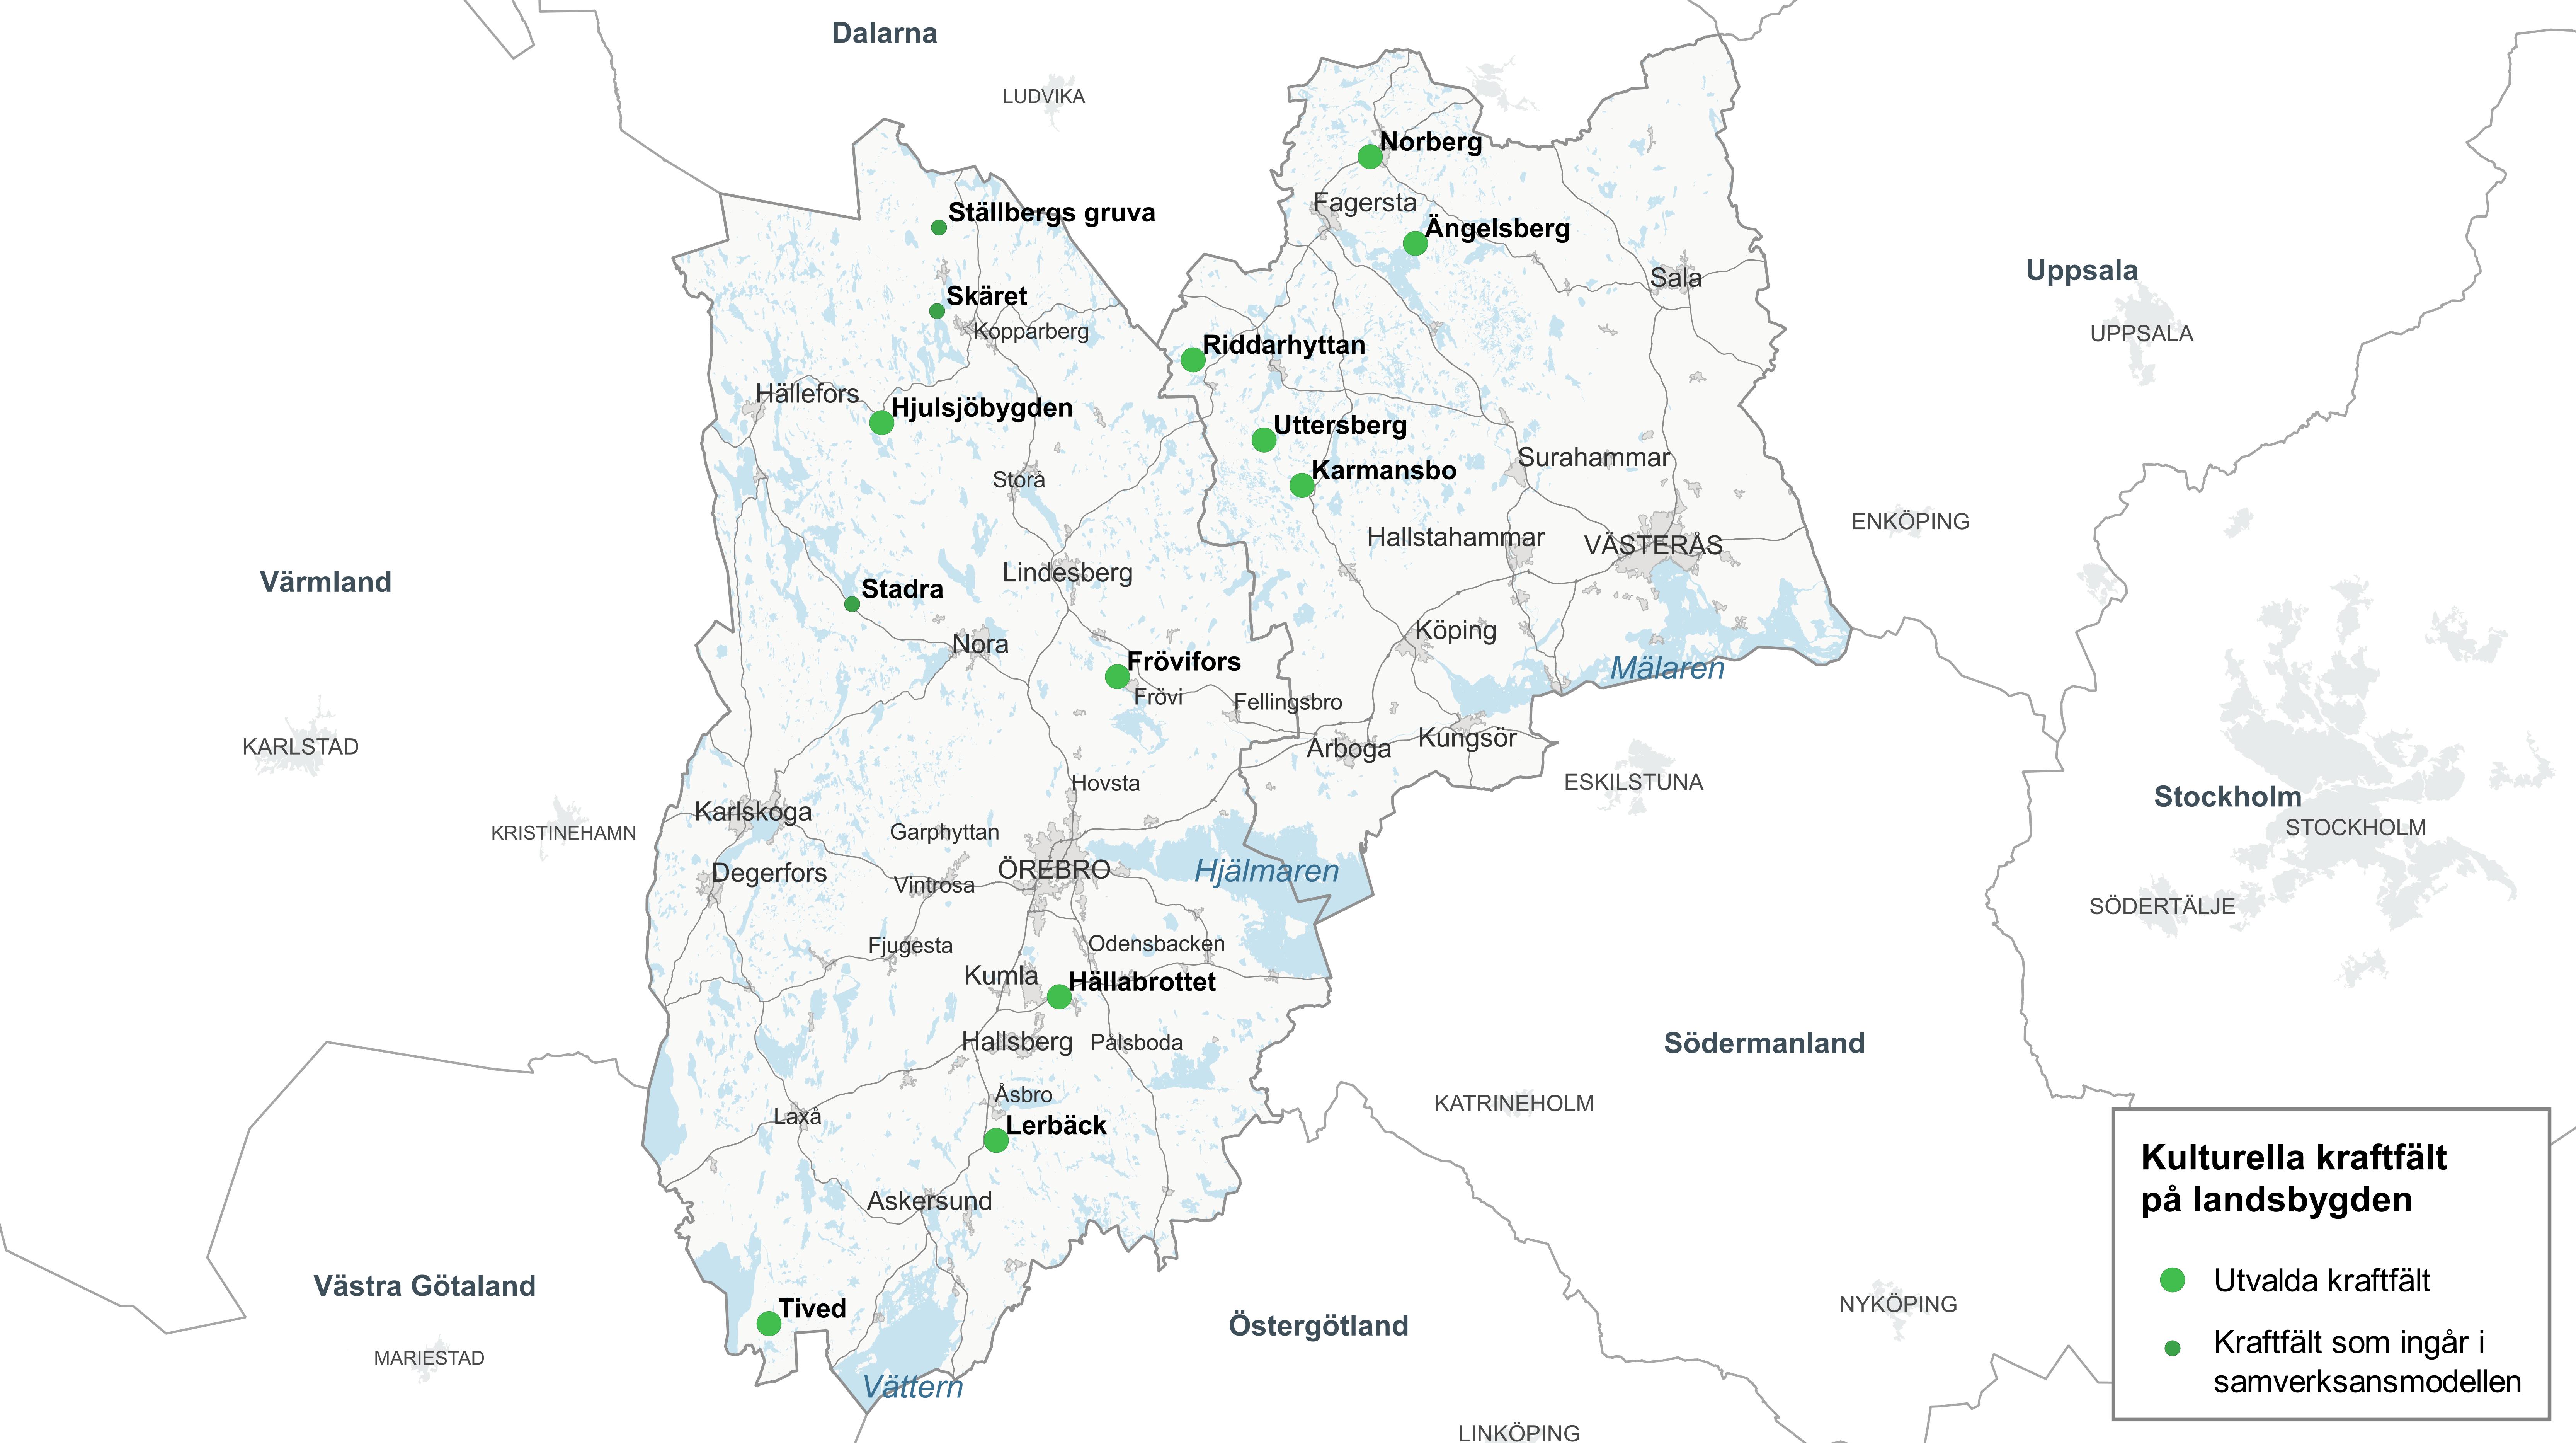 Kartbild Örebro och Västmanlands län